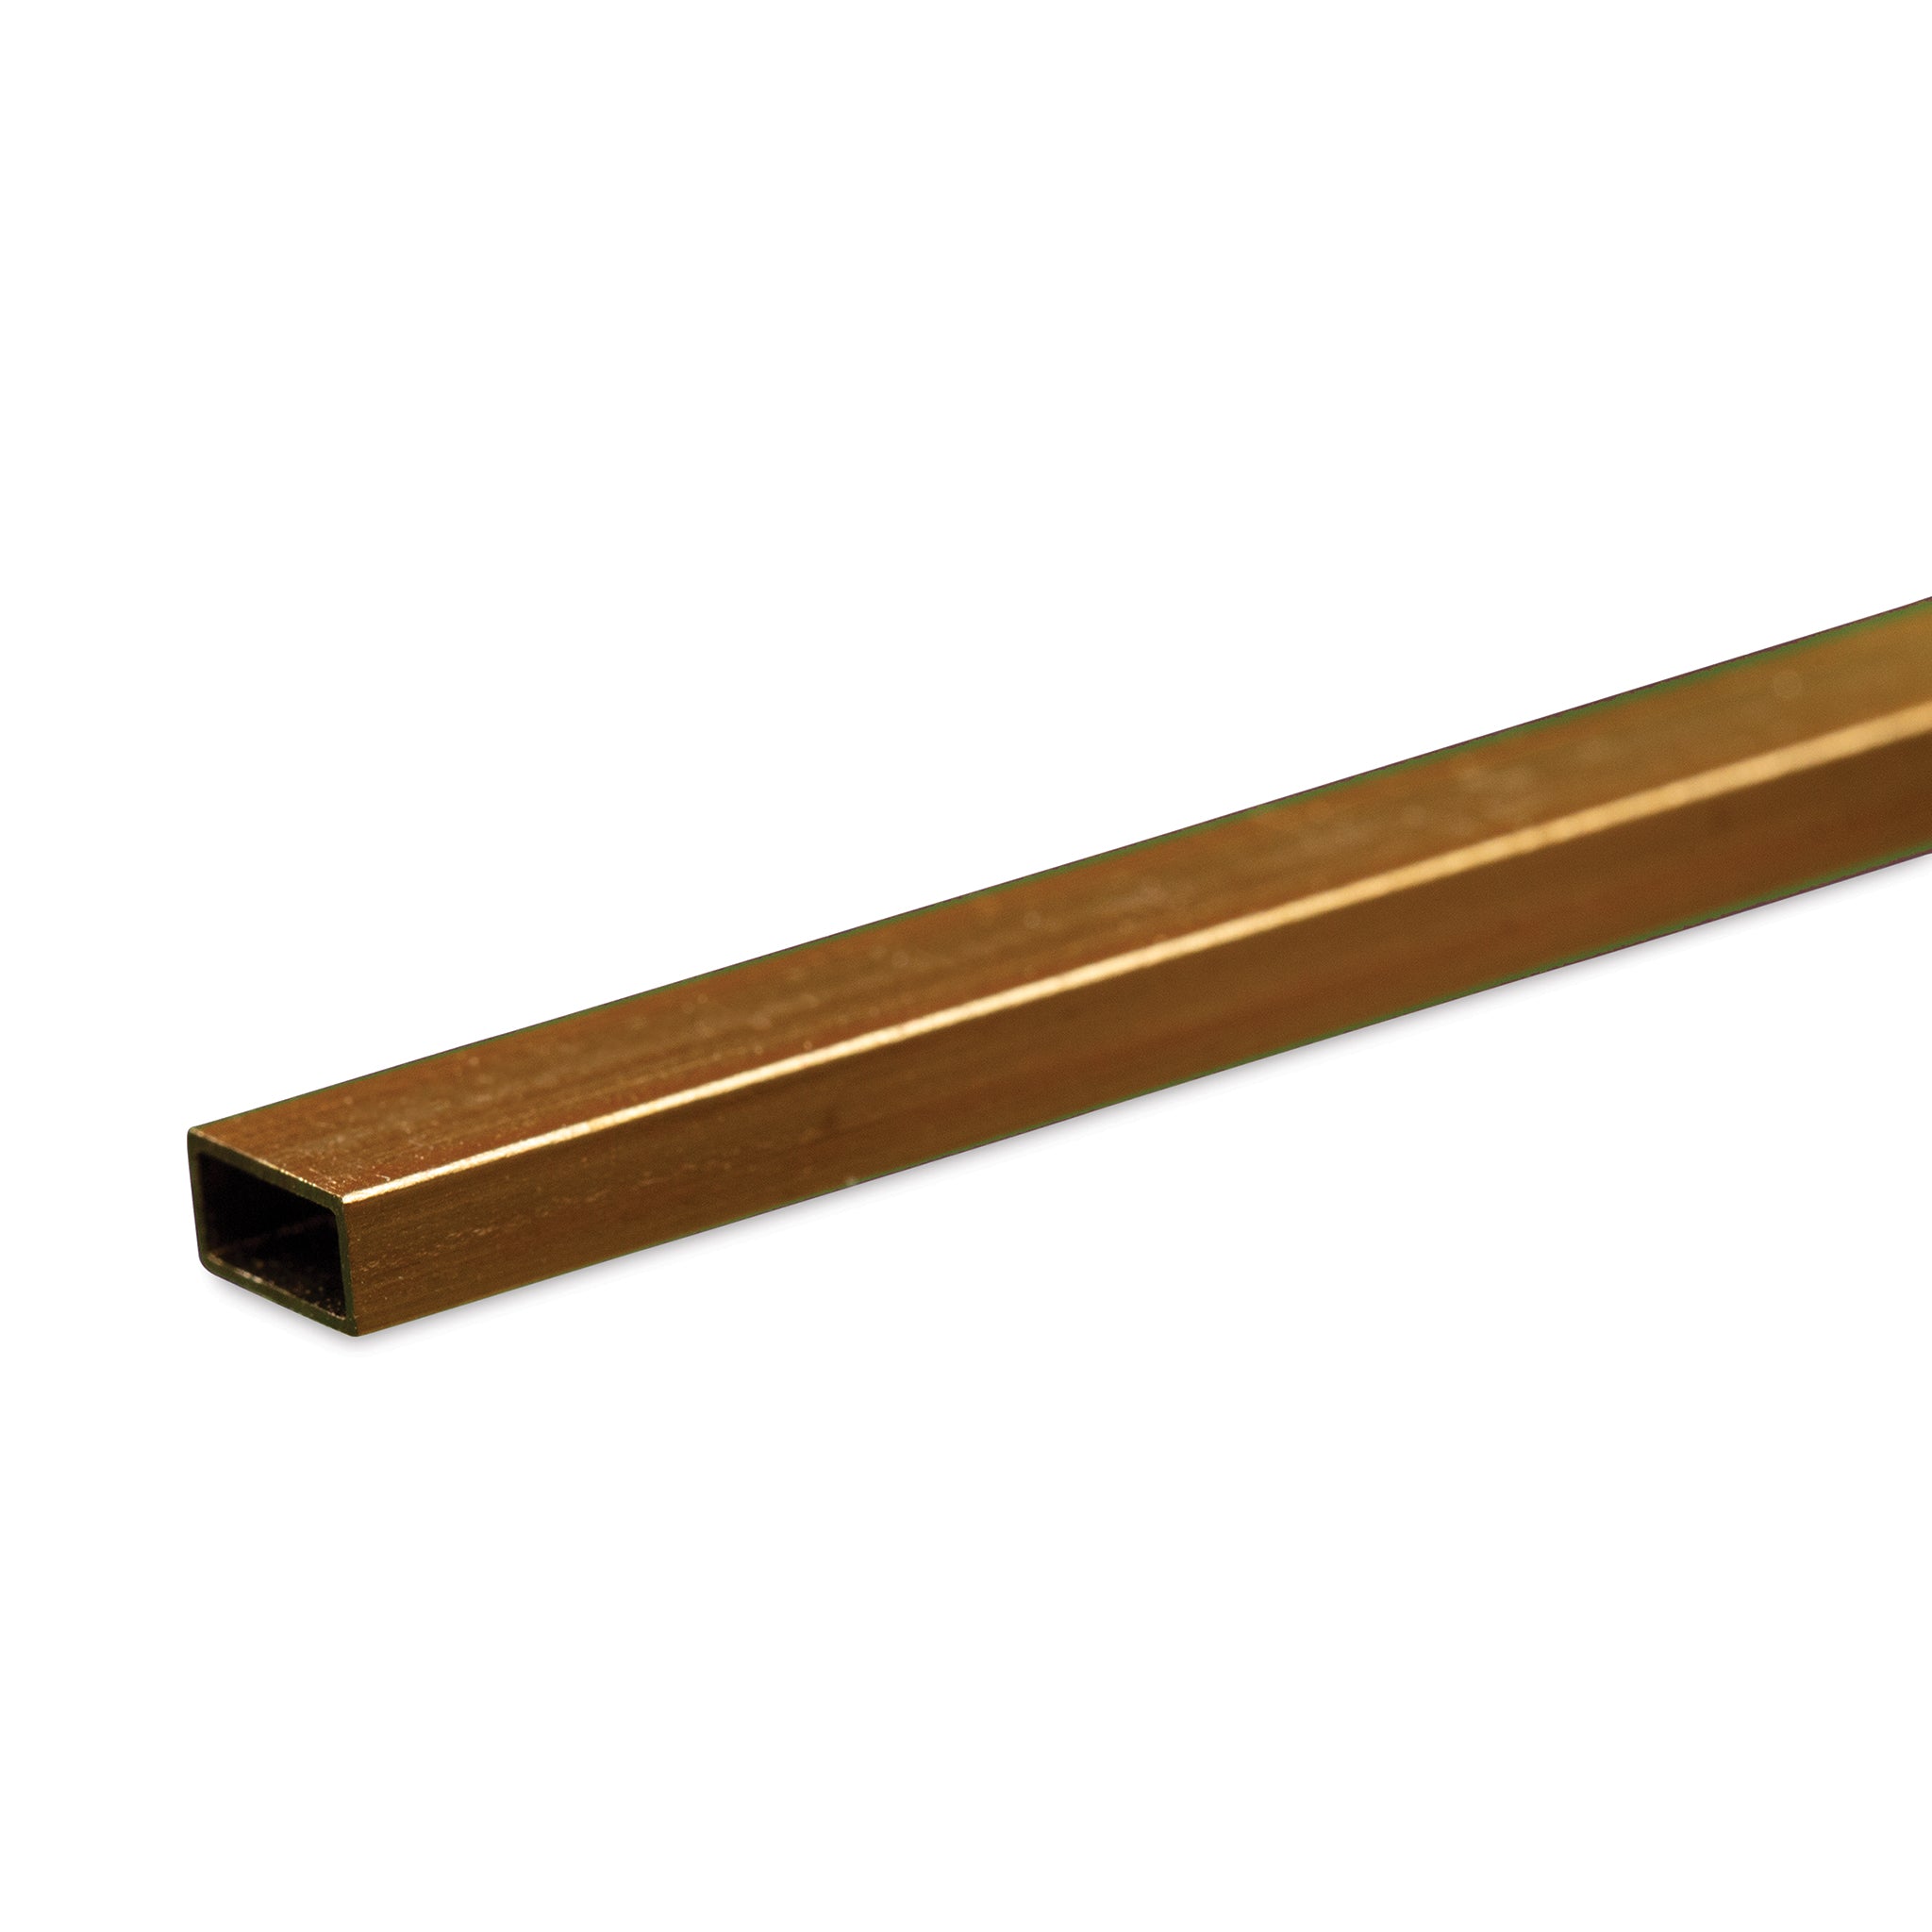 K&S Metals 8264 Rectangular Brass Tube 1/8" x 1/4" x 0.014" Wall x 12" Long (1 Piece)